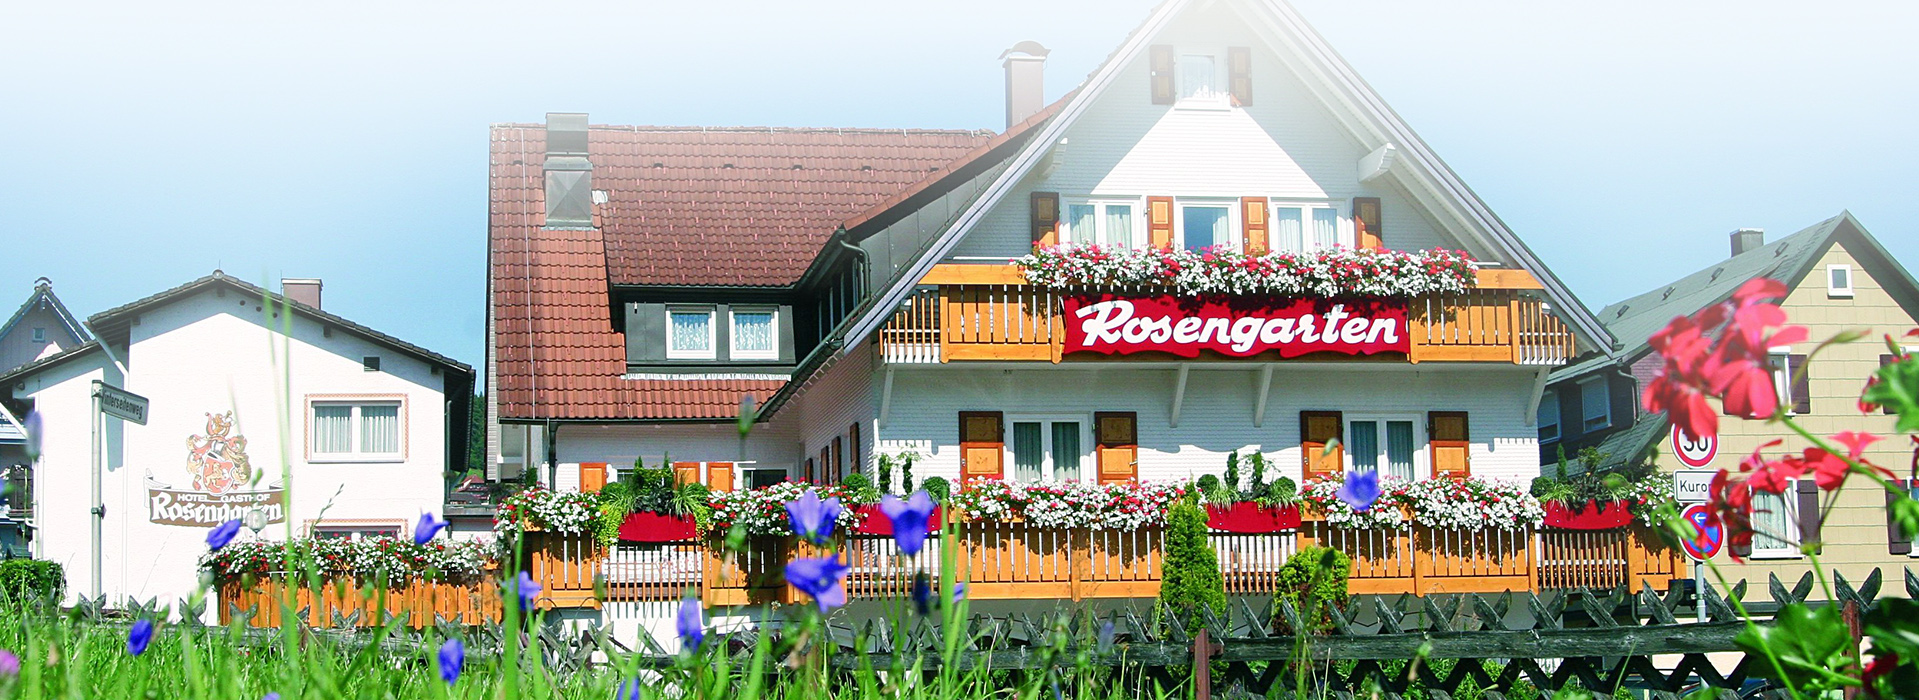 Ein großes Haus mit mehreren großen Balkonen, an denen Blumenkästen hängen. An einem Balkon hängt ein rotes Schild mit der Aufschrift "Rosengarten". Die Fassade besteht aus weißen Schindeln. Neben dem Haus stehen noch weitere.